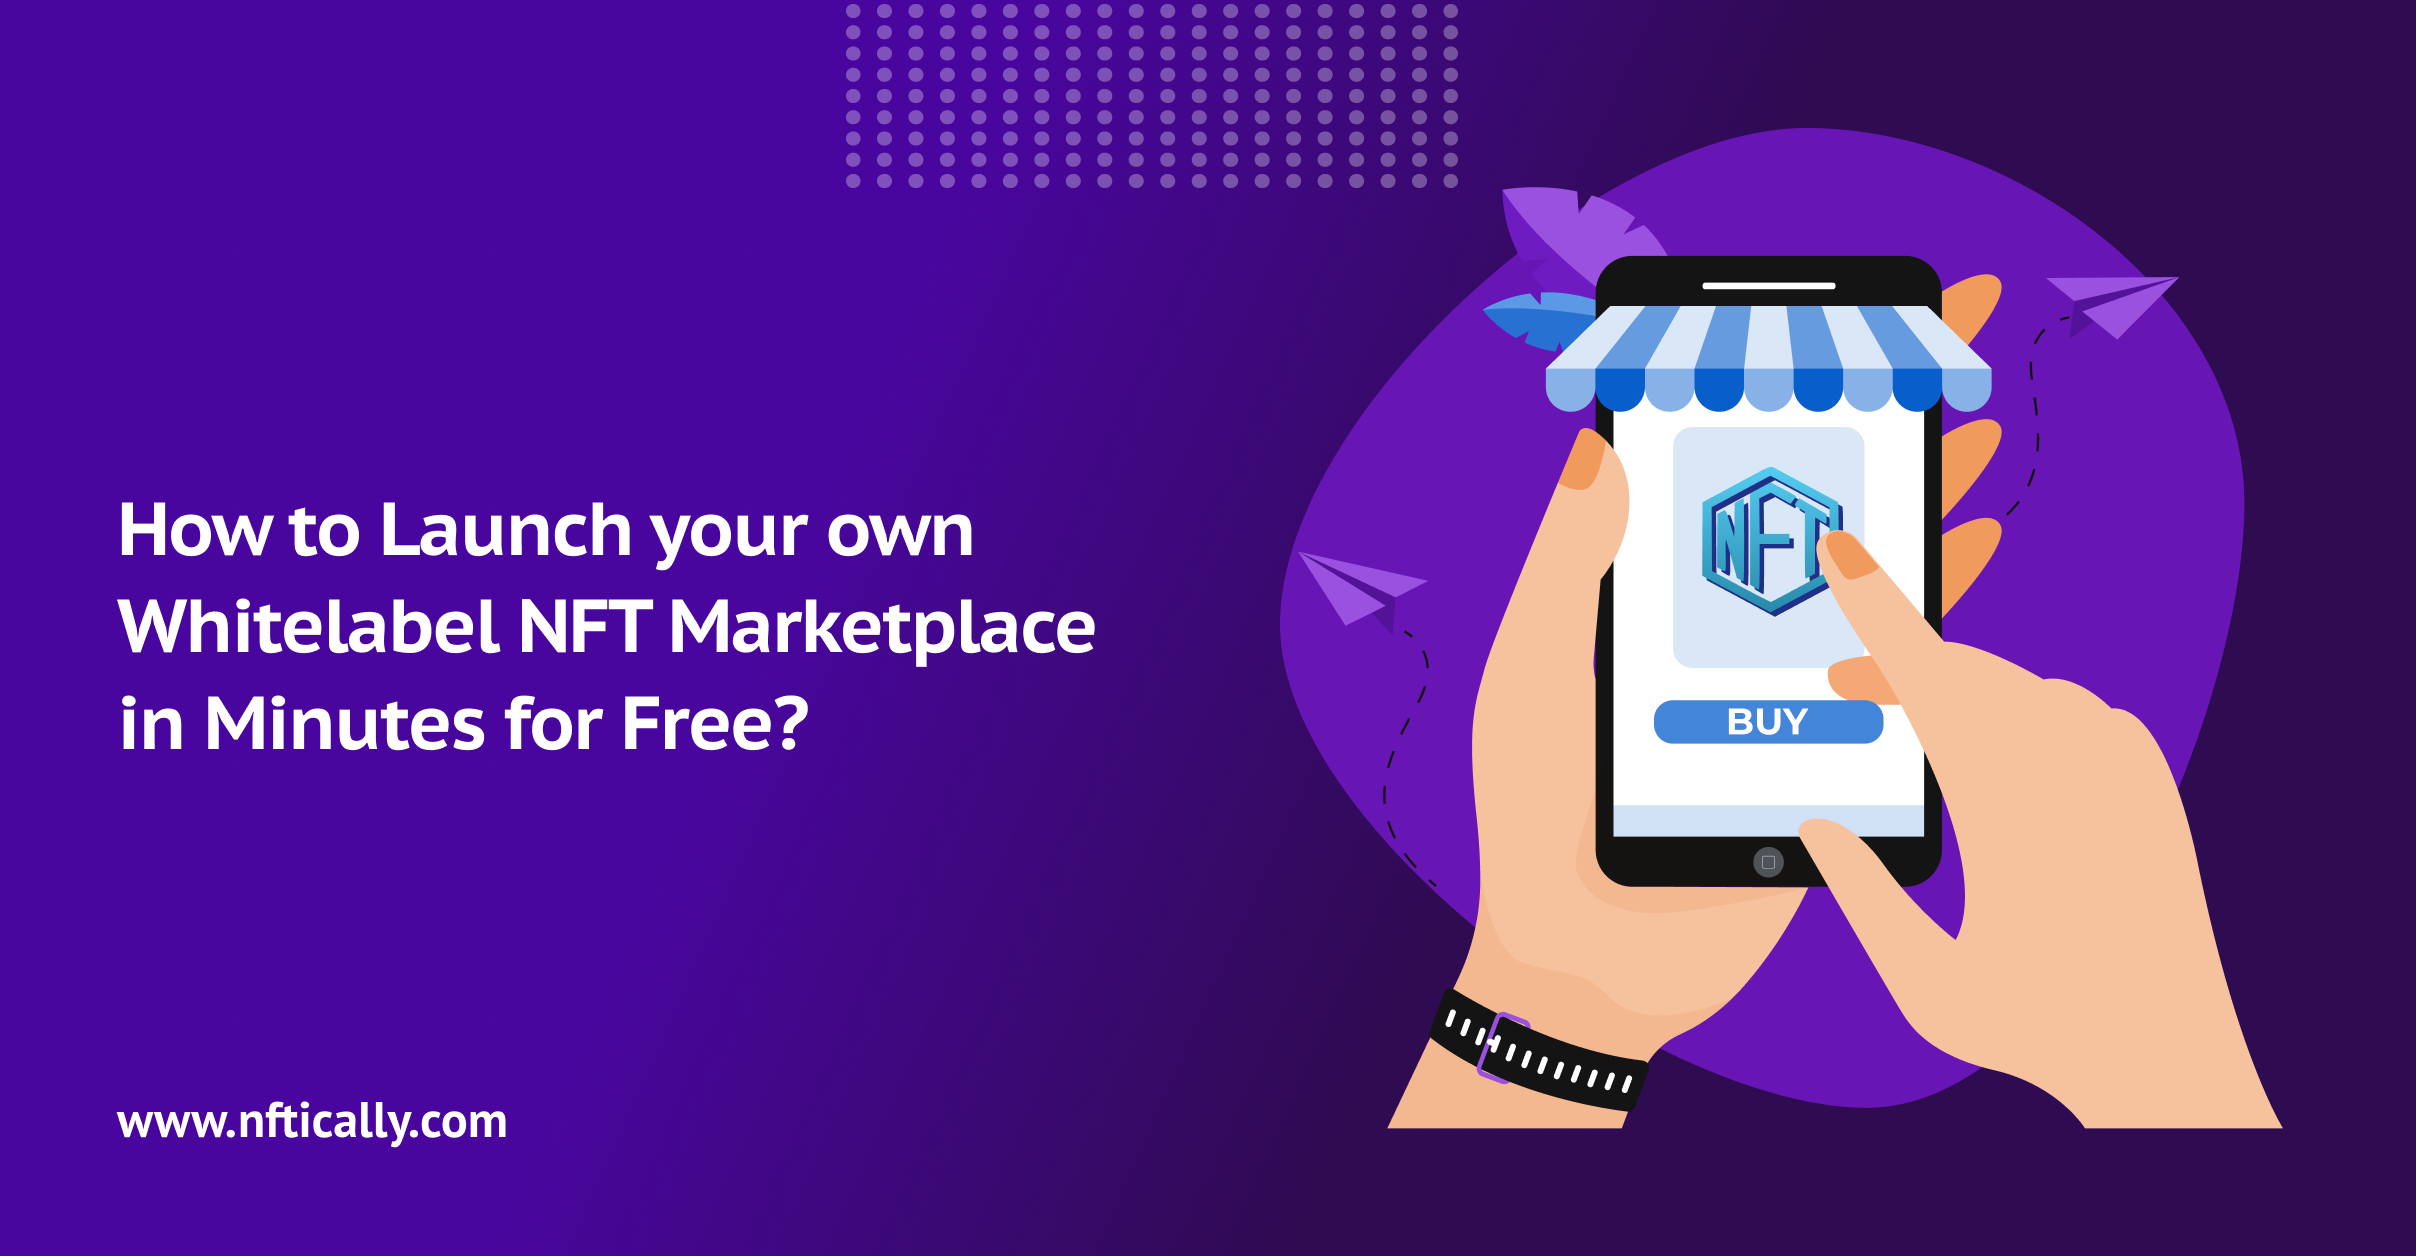 Whitelabel NFT Marketplace Free